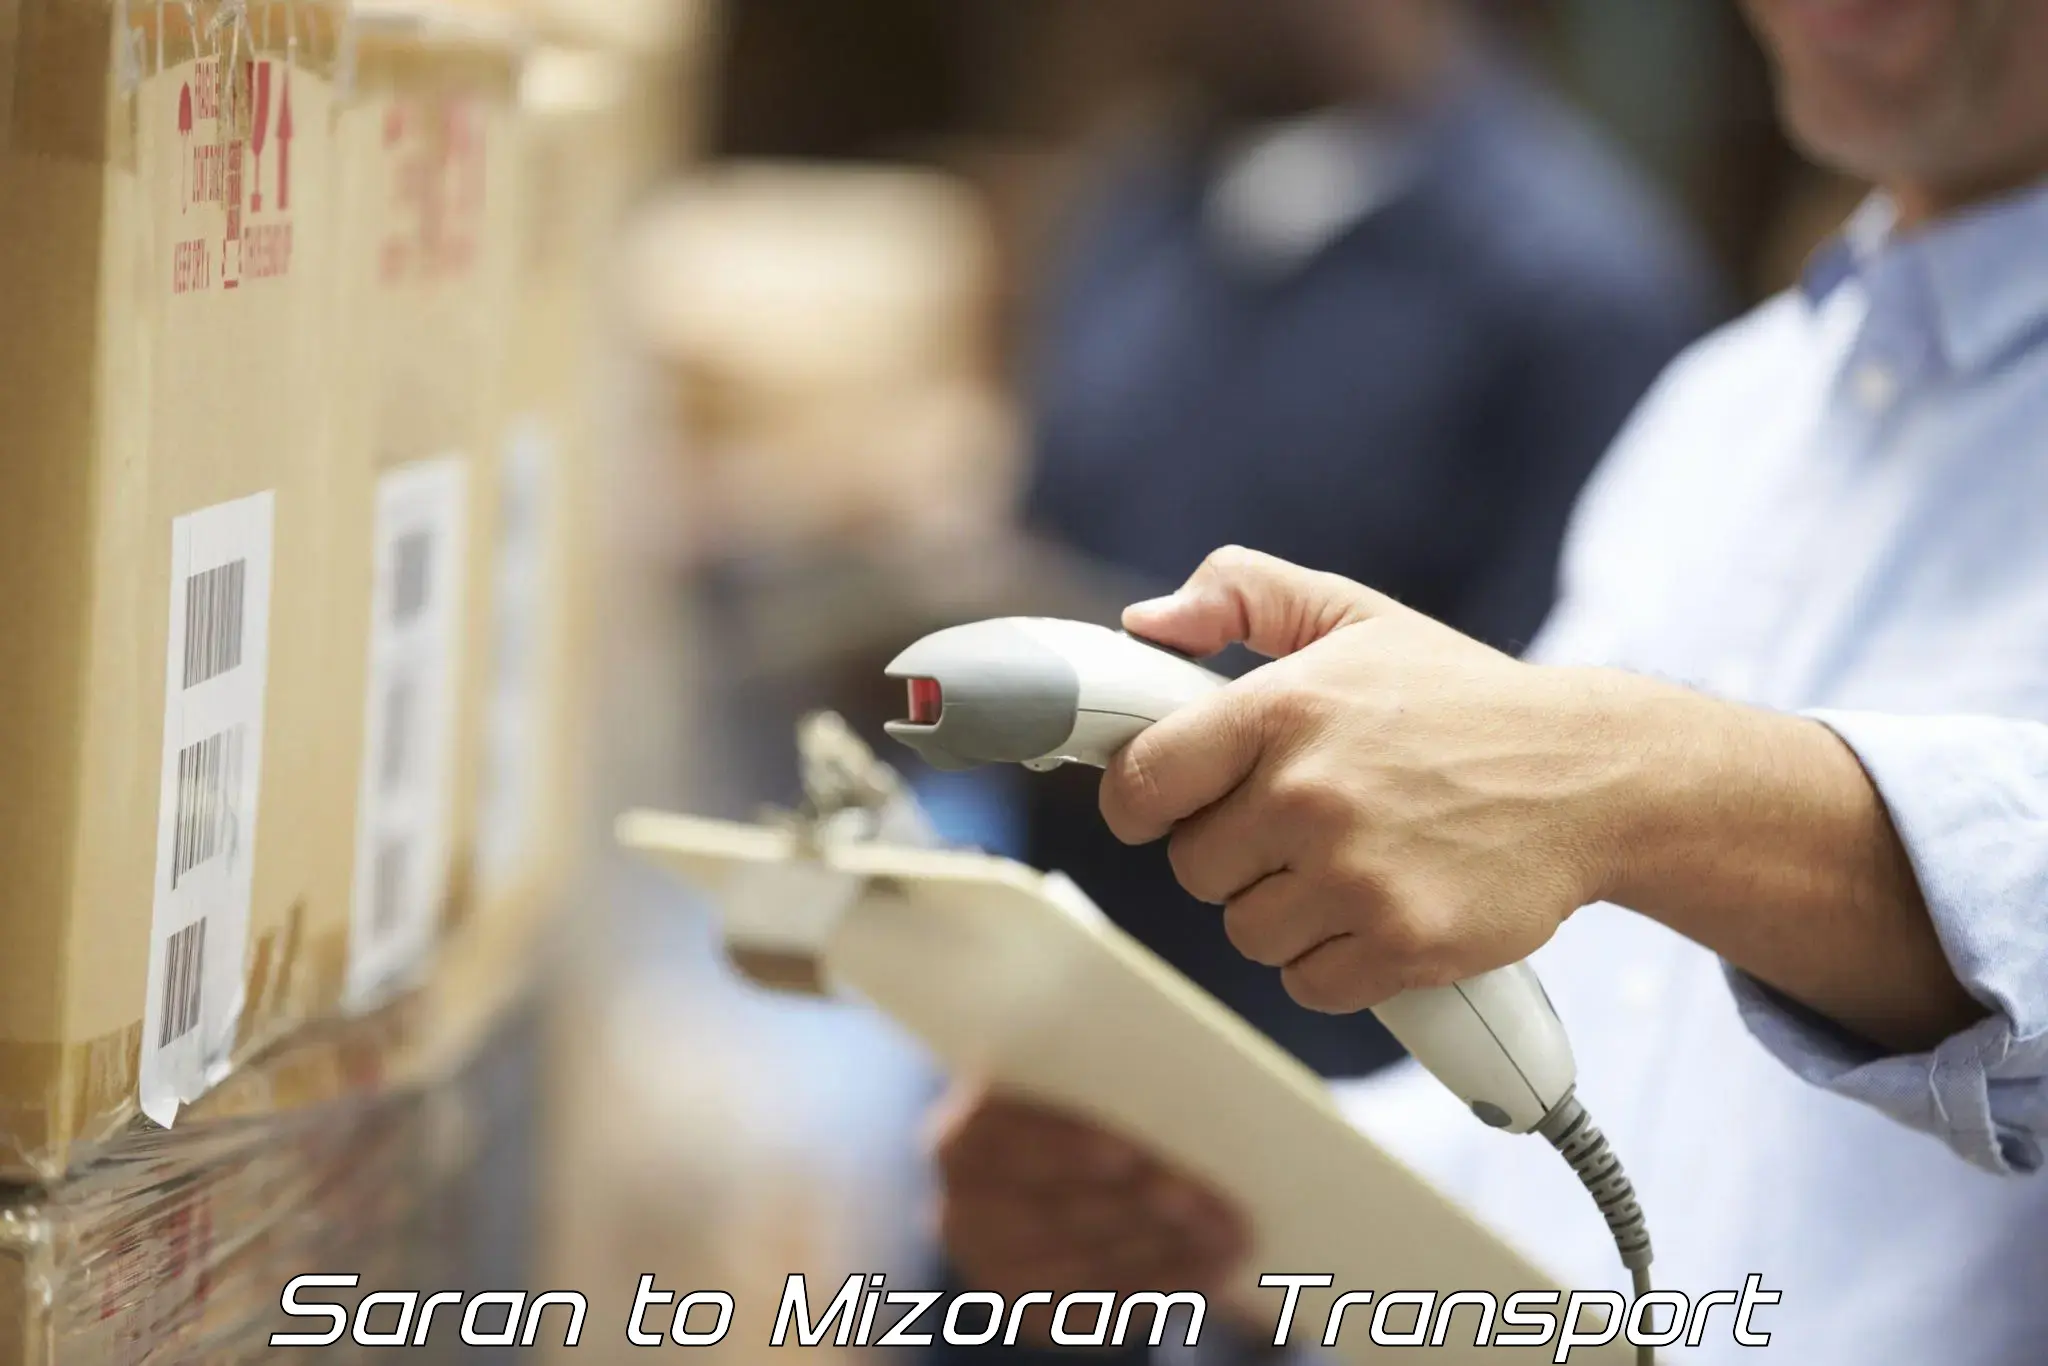 Express transport services Saran to Mizoram